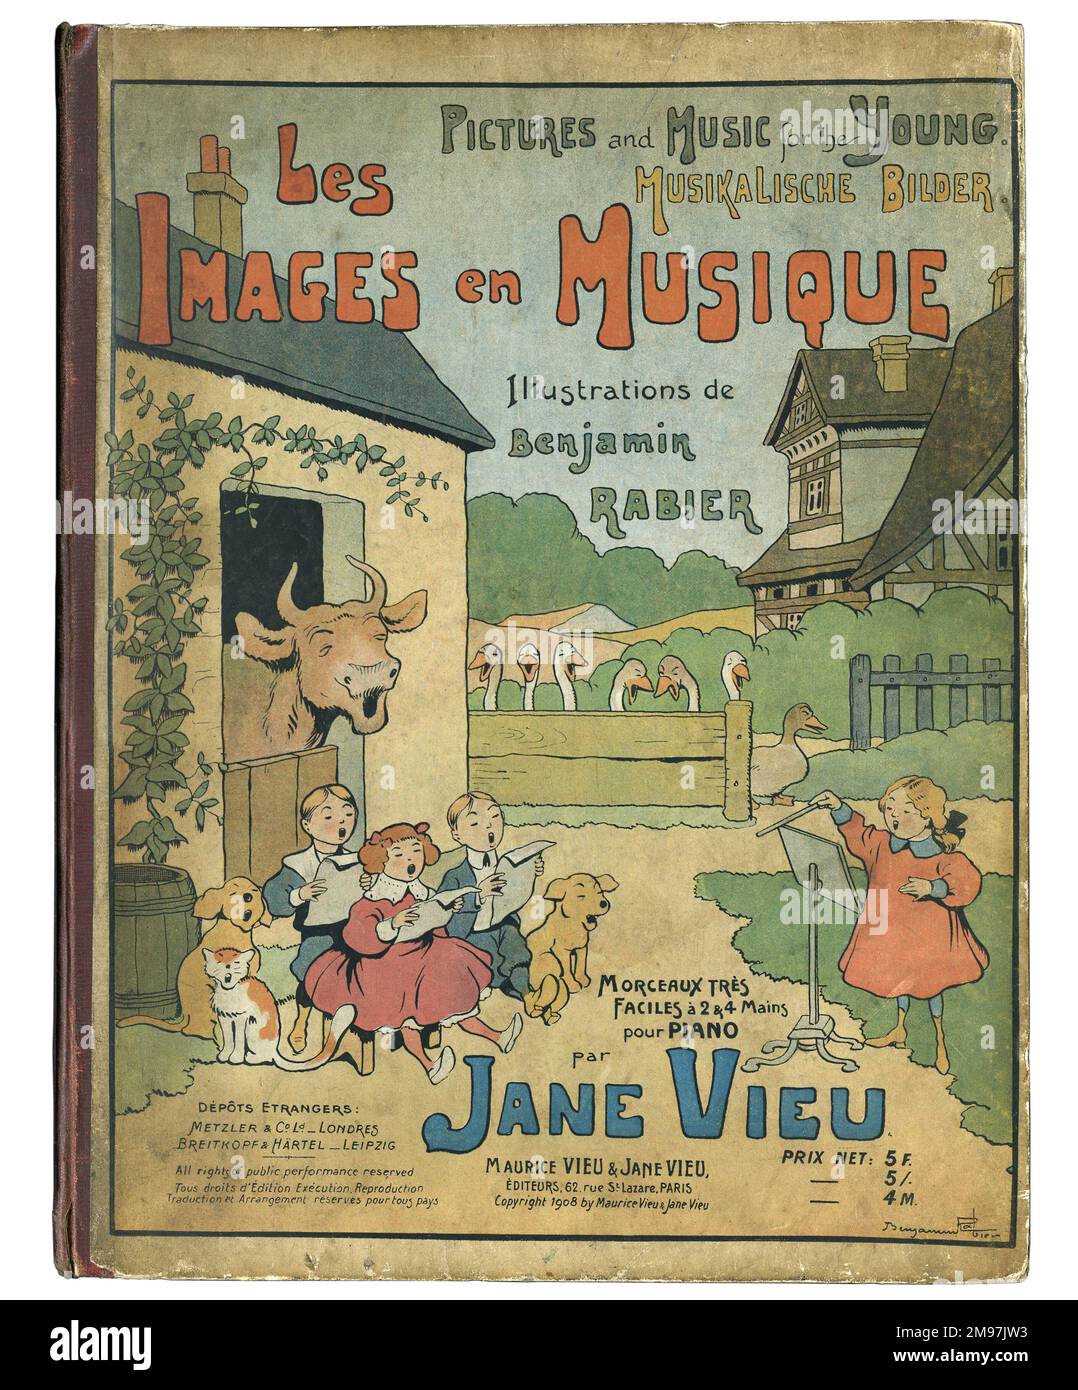 Couverture design, les Images en musique, avec des illustrations de Benjamin Rabier et Easy pièces pour piano de Jane Vieu. Représentant des enfants et des animaux qui chantent dans une ferme. Banque D'Images